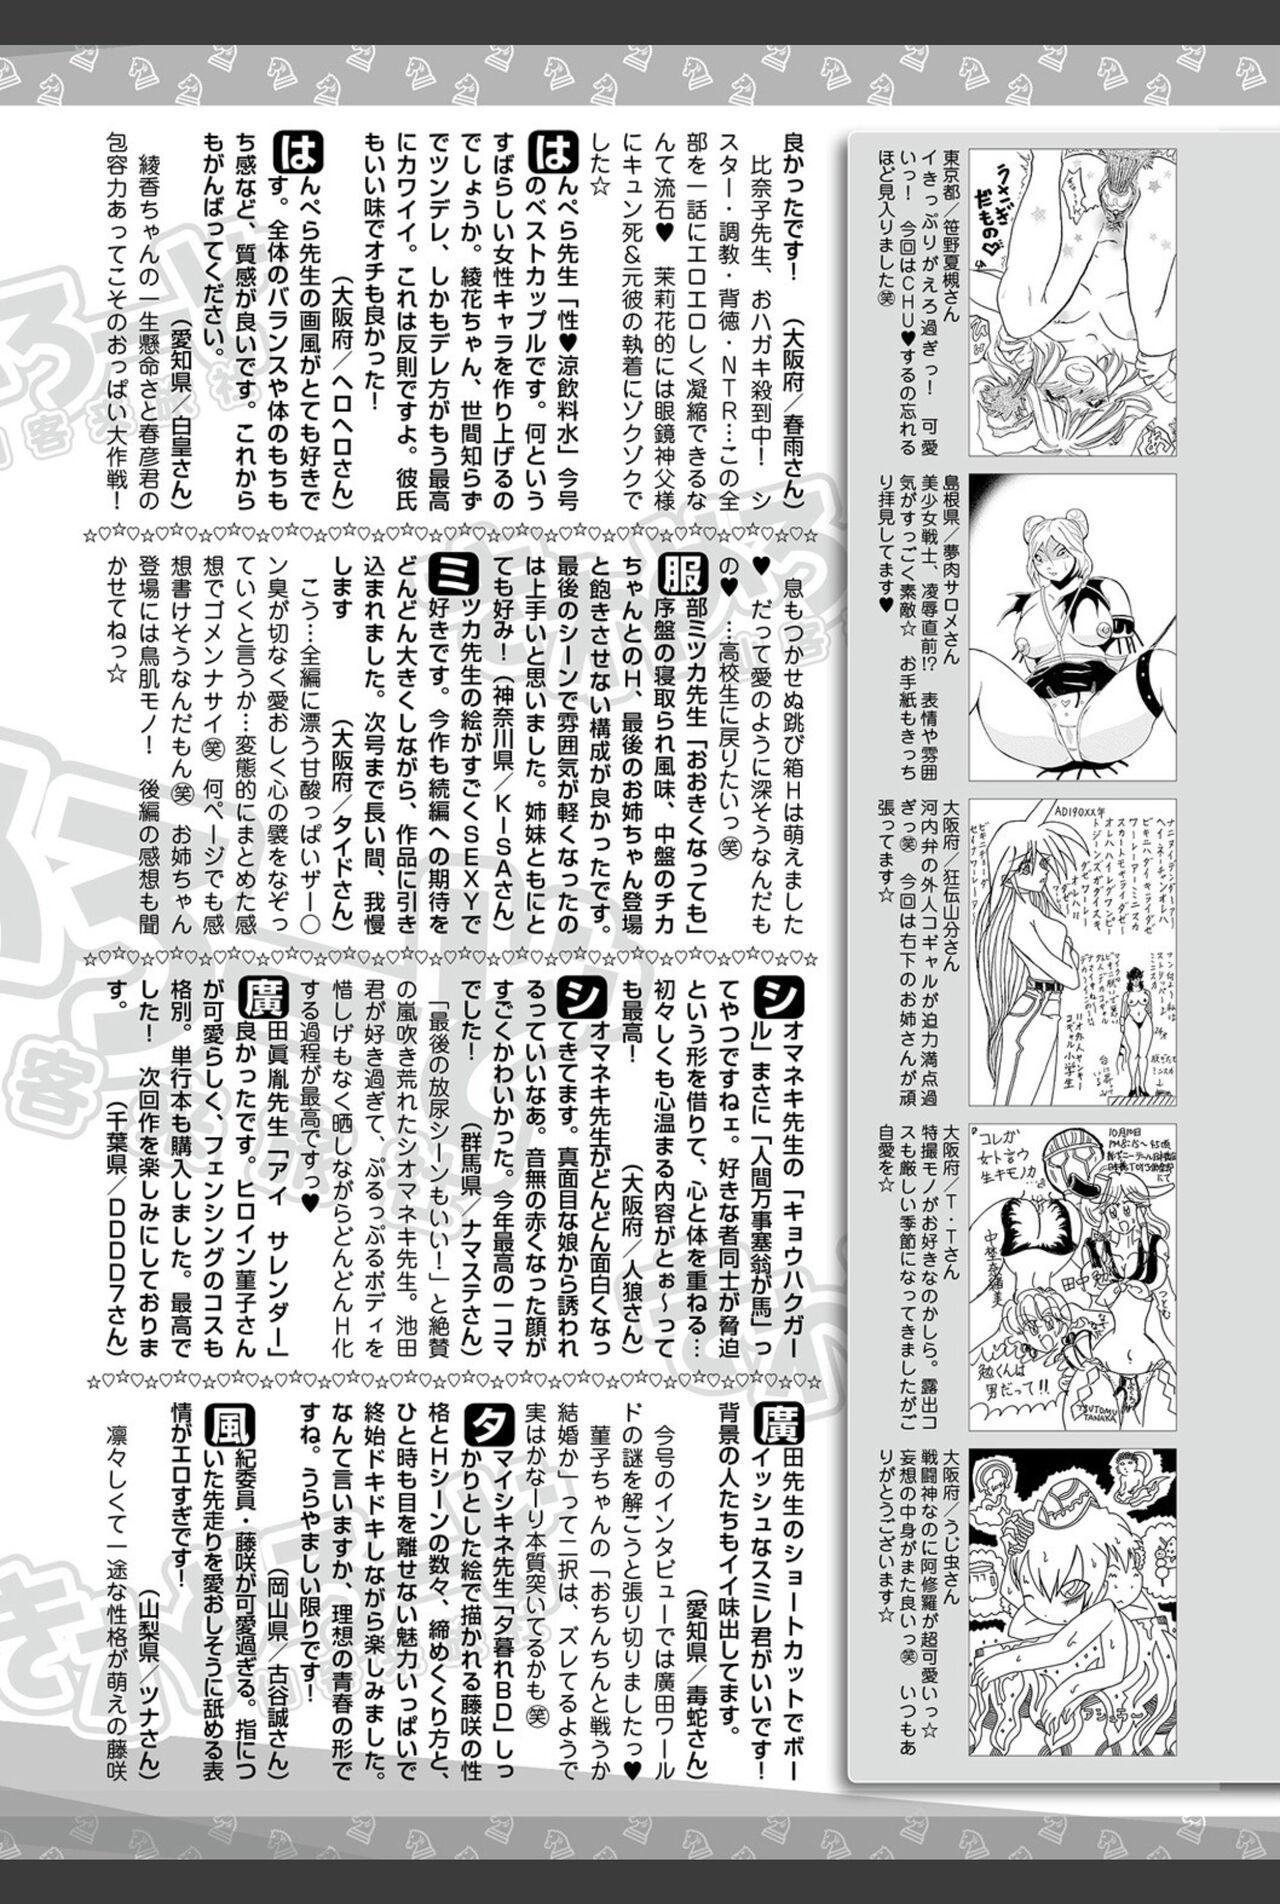 Bishoujo Kakumei KIWAME 2011-02 Vol.12 203